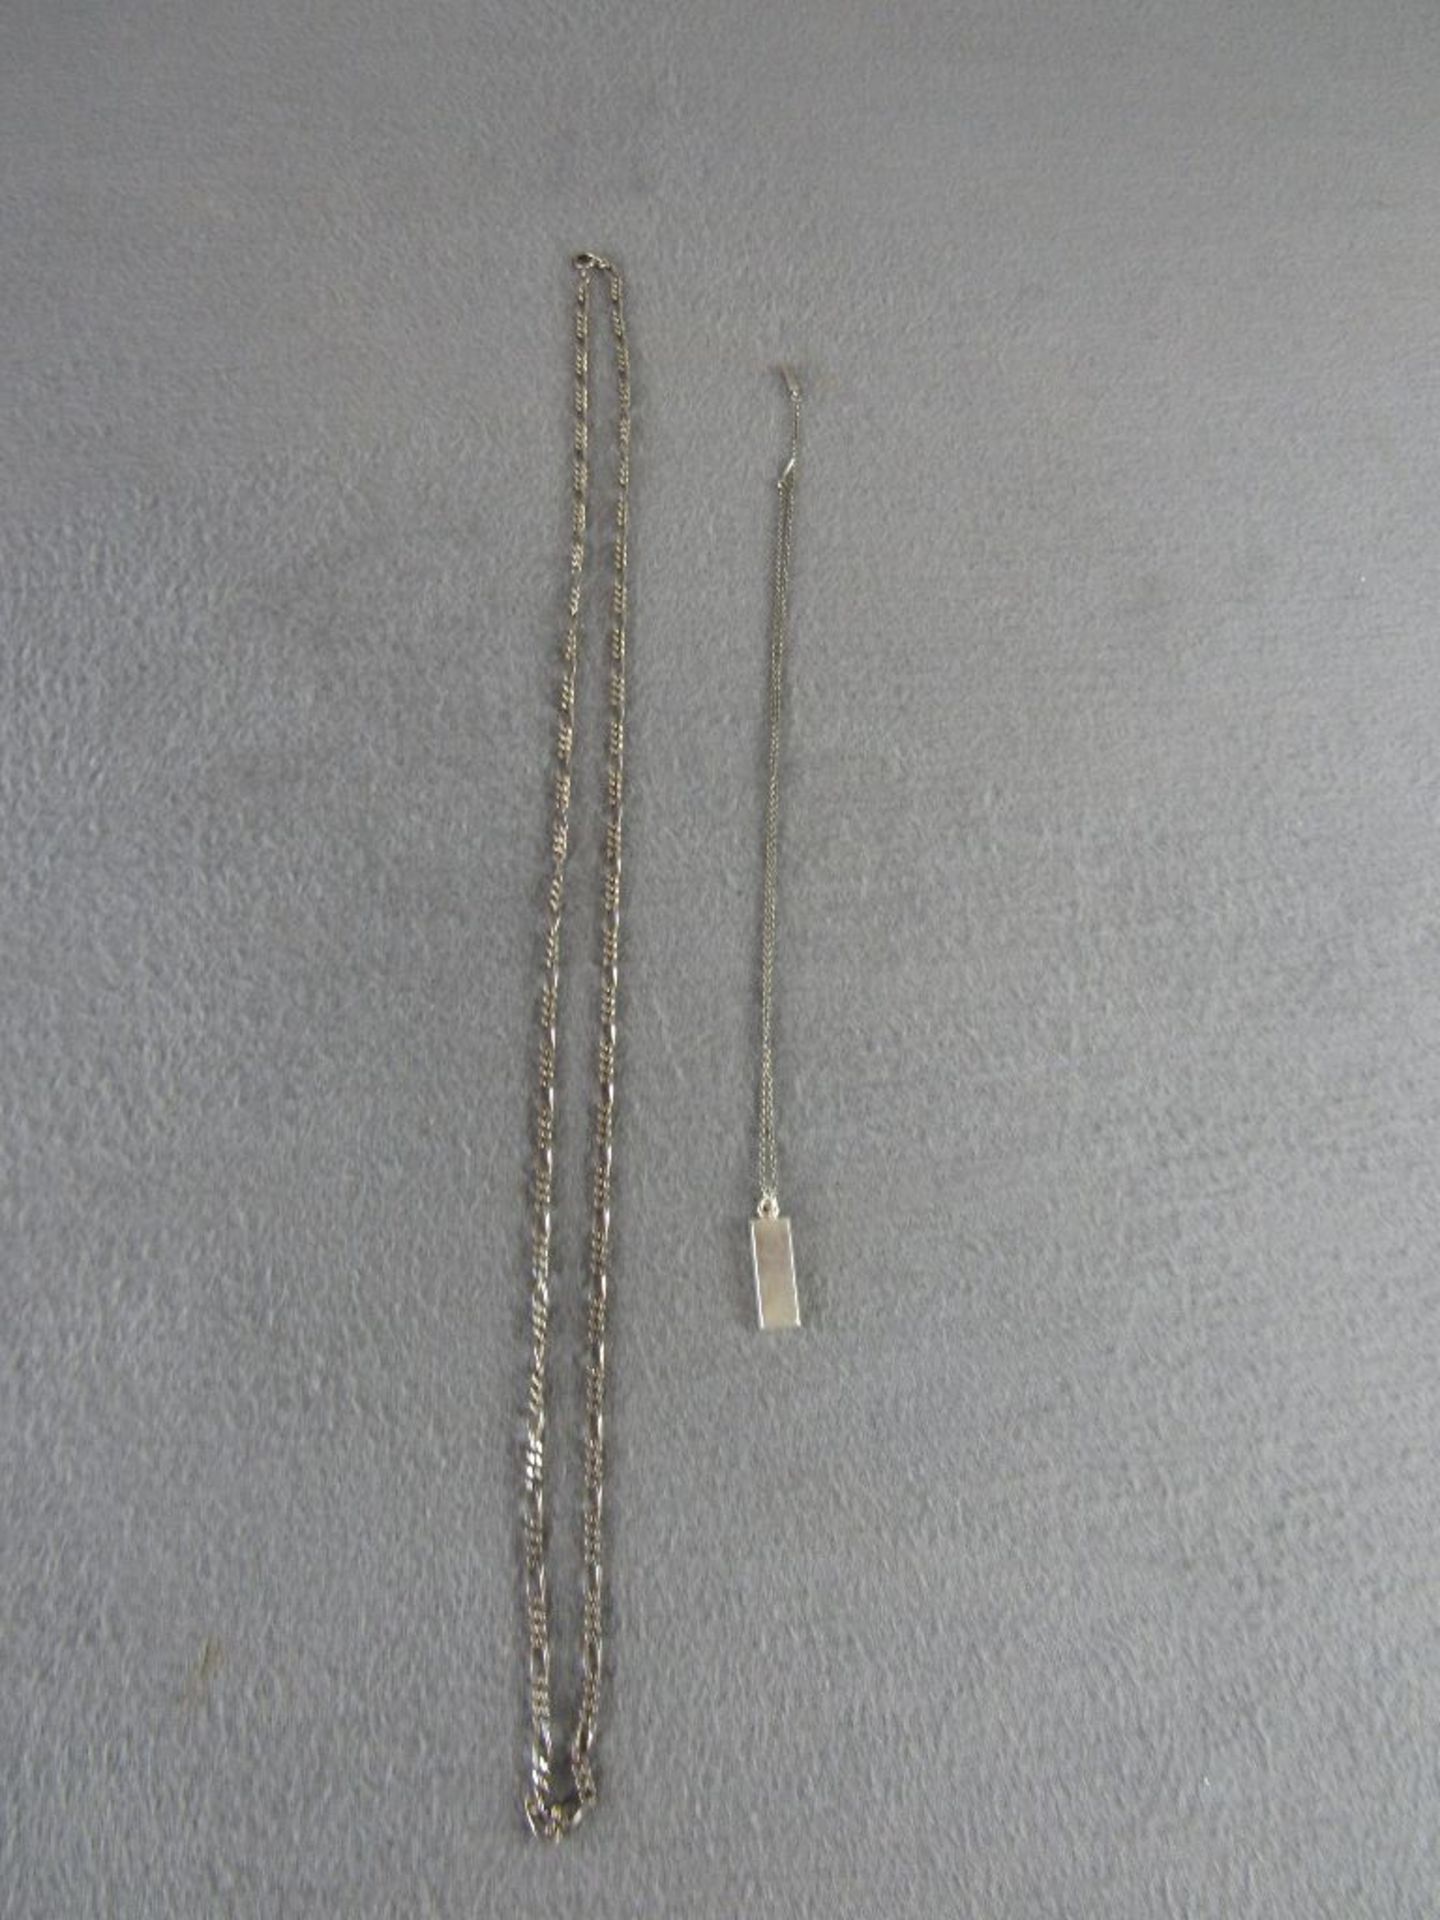 Zwei silberne Halsketten 28 Gramm